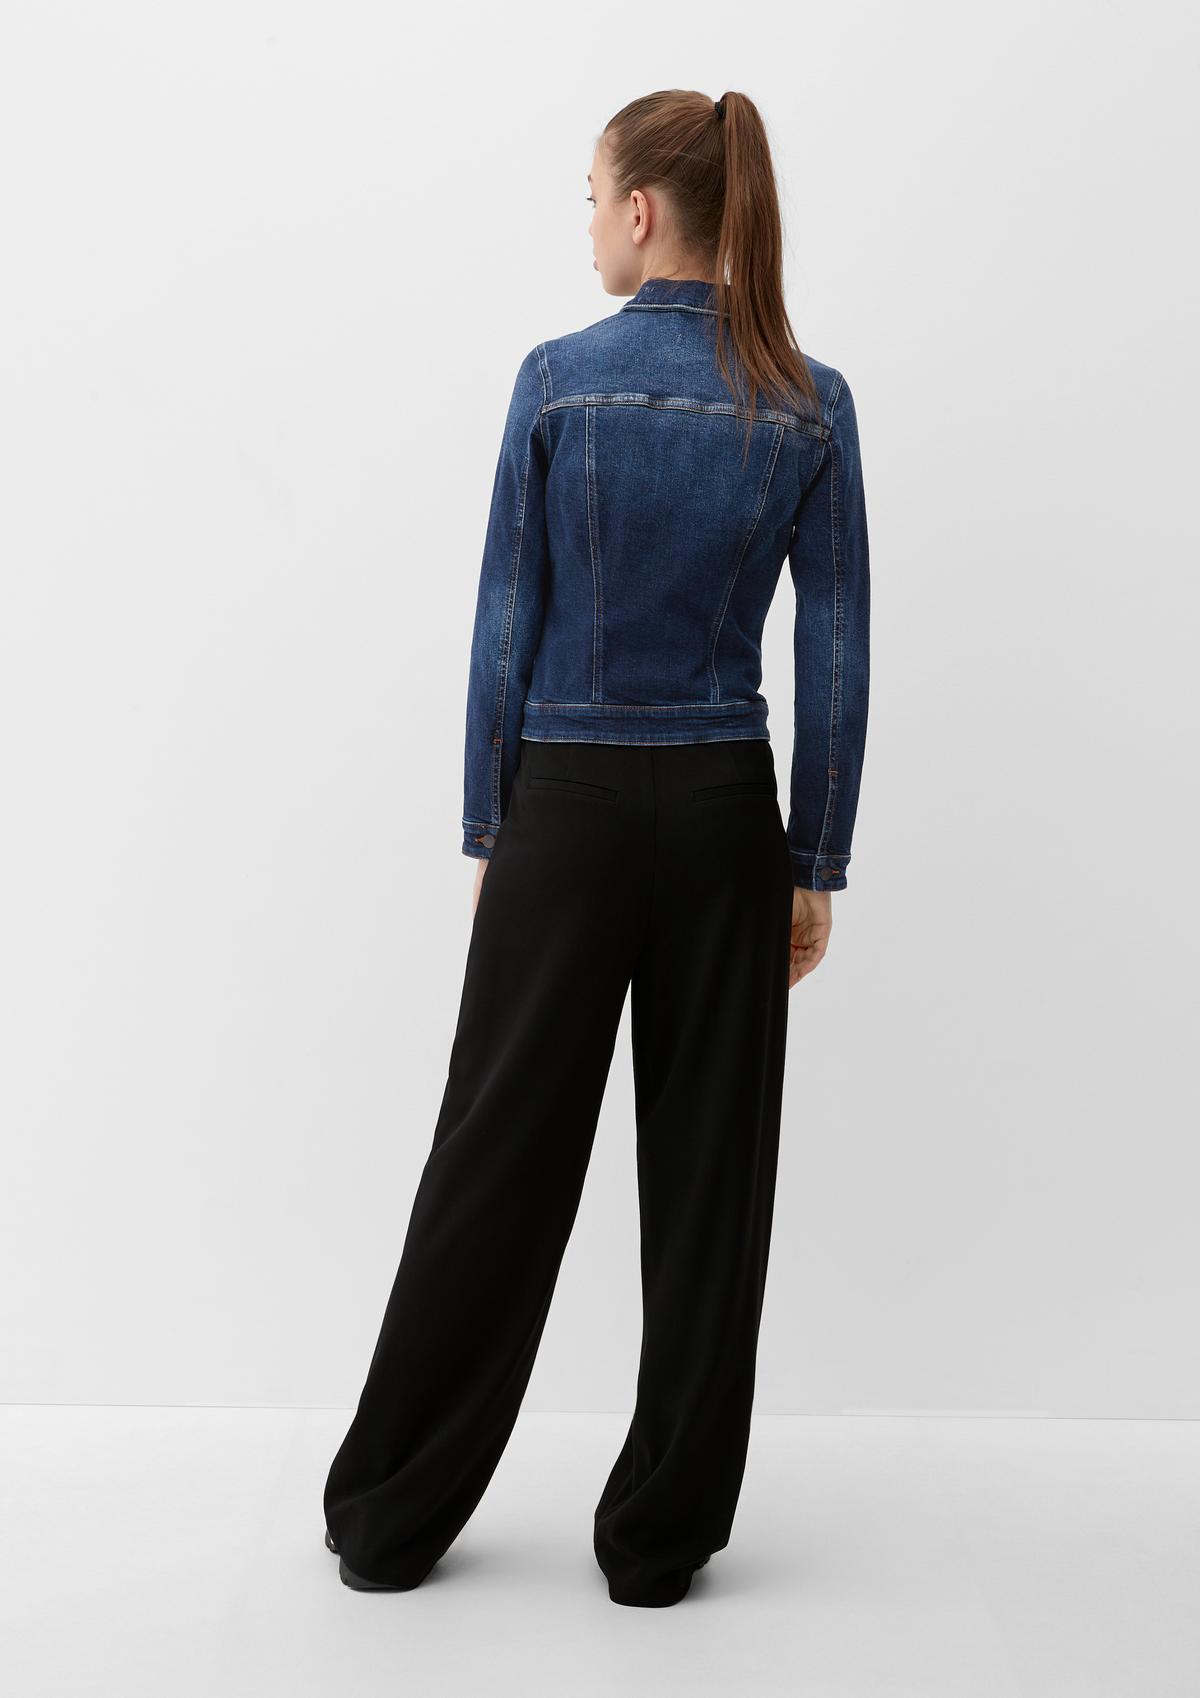 Jeansjacke aus Baumwollstretch - blau